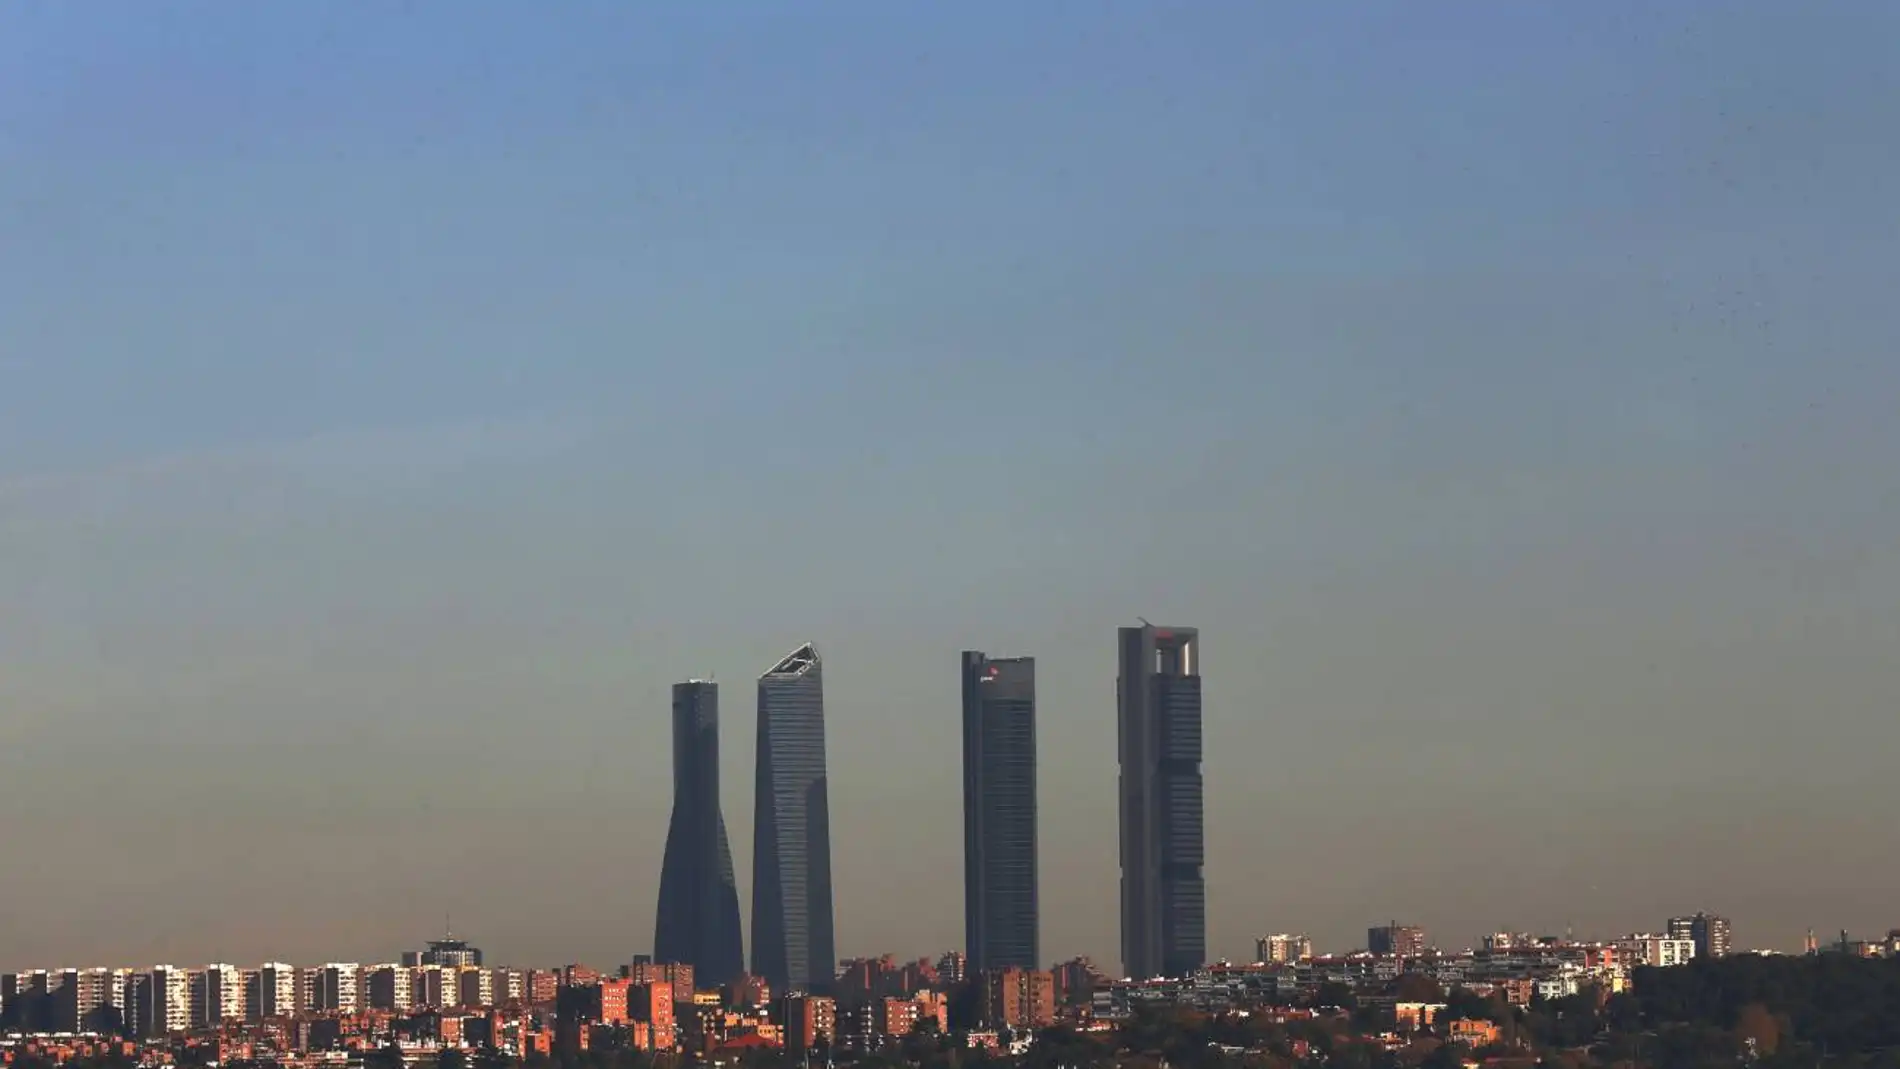 Contaminación en el cielo de Madrid